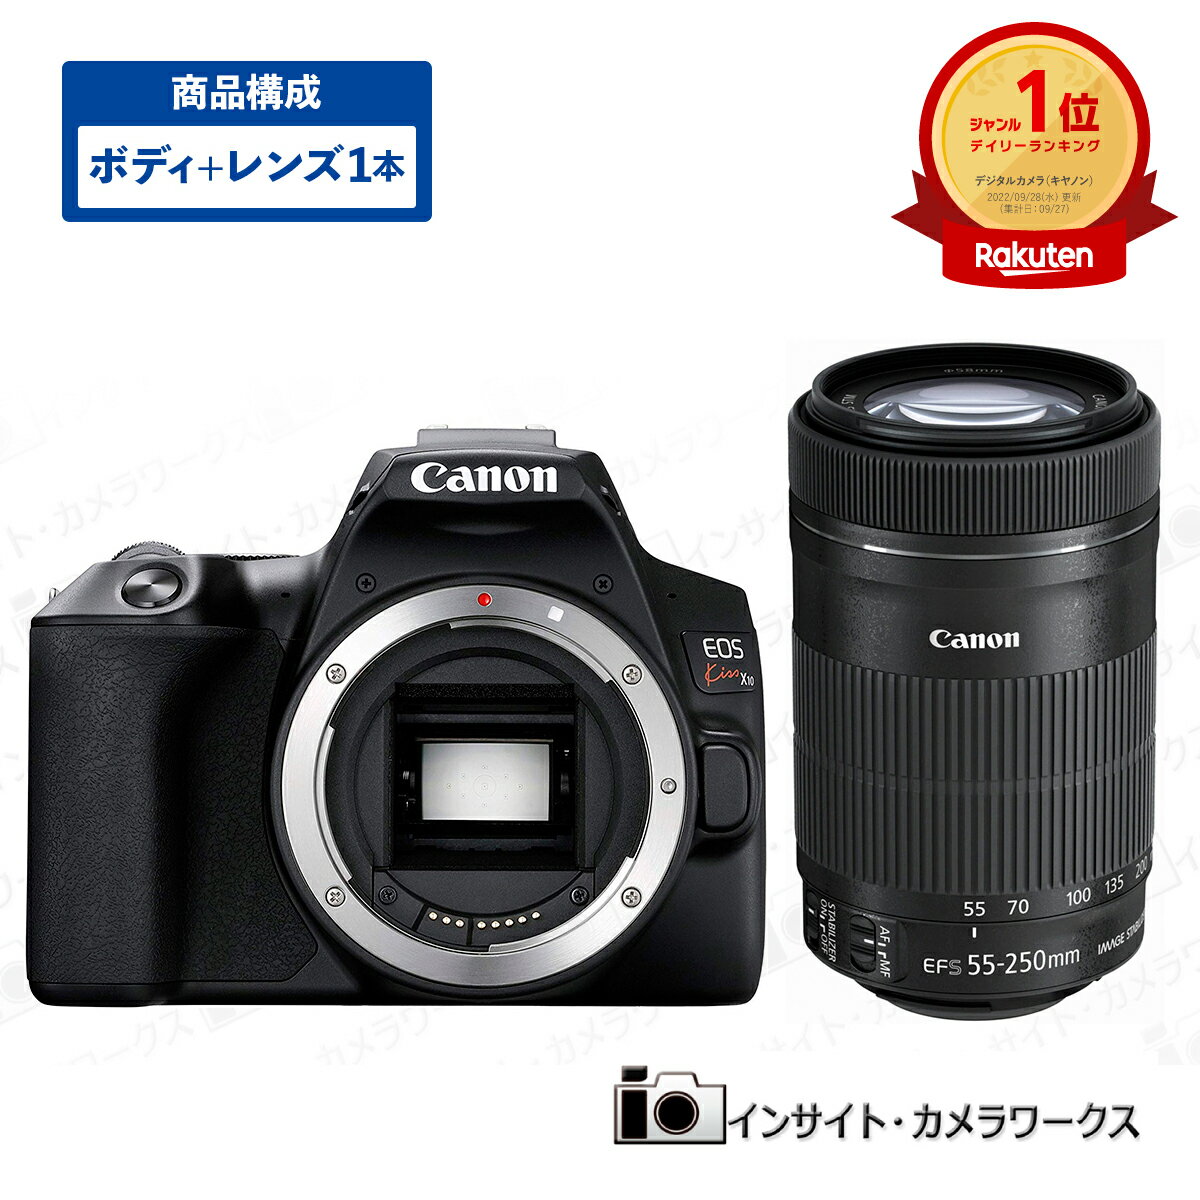 canon キヤノン EOS Kiss X10 ボディ ブラック + 望遠ズームレンズセット EF-S55-250mm F4-5.6 IS STM デジタル一眼レフカメラ イオス Canon